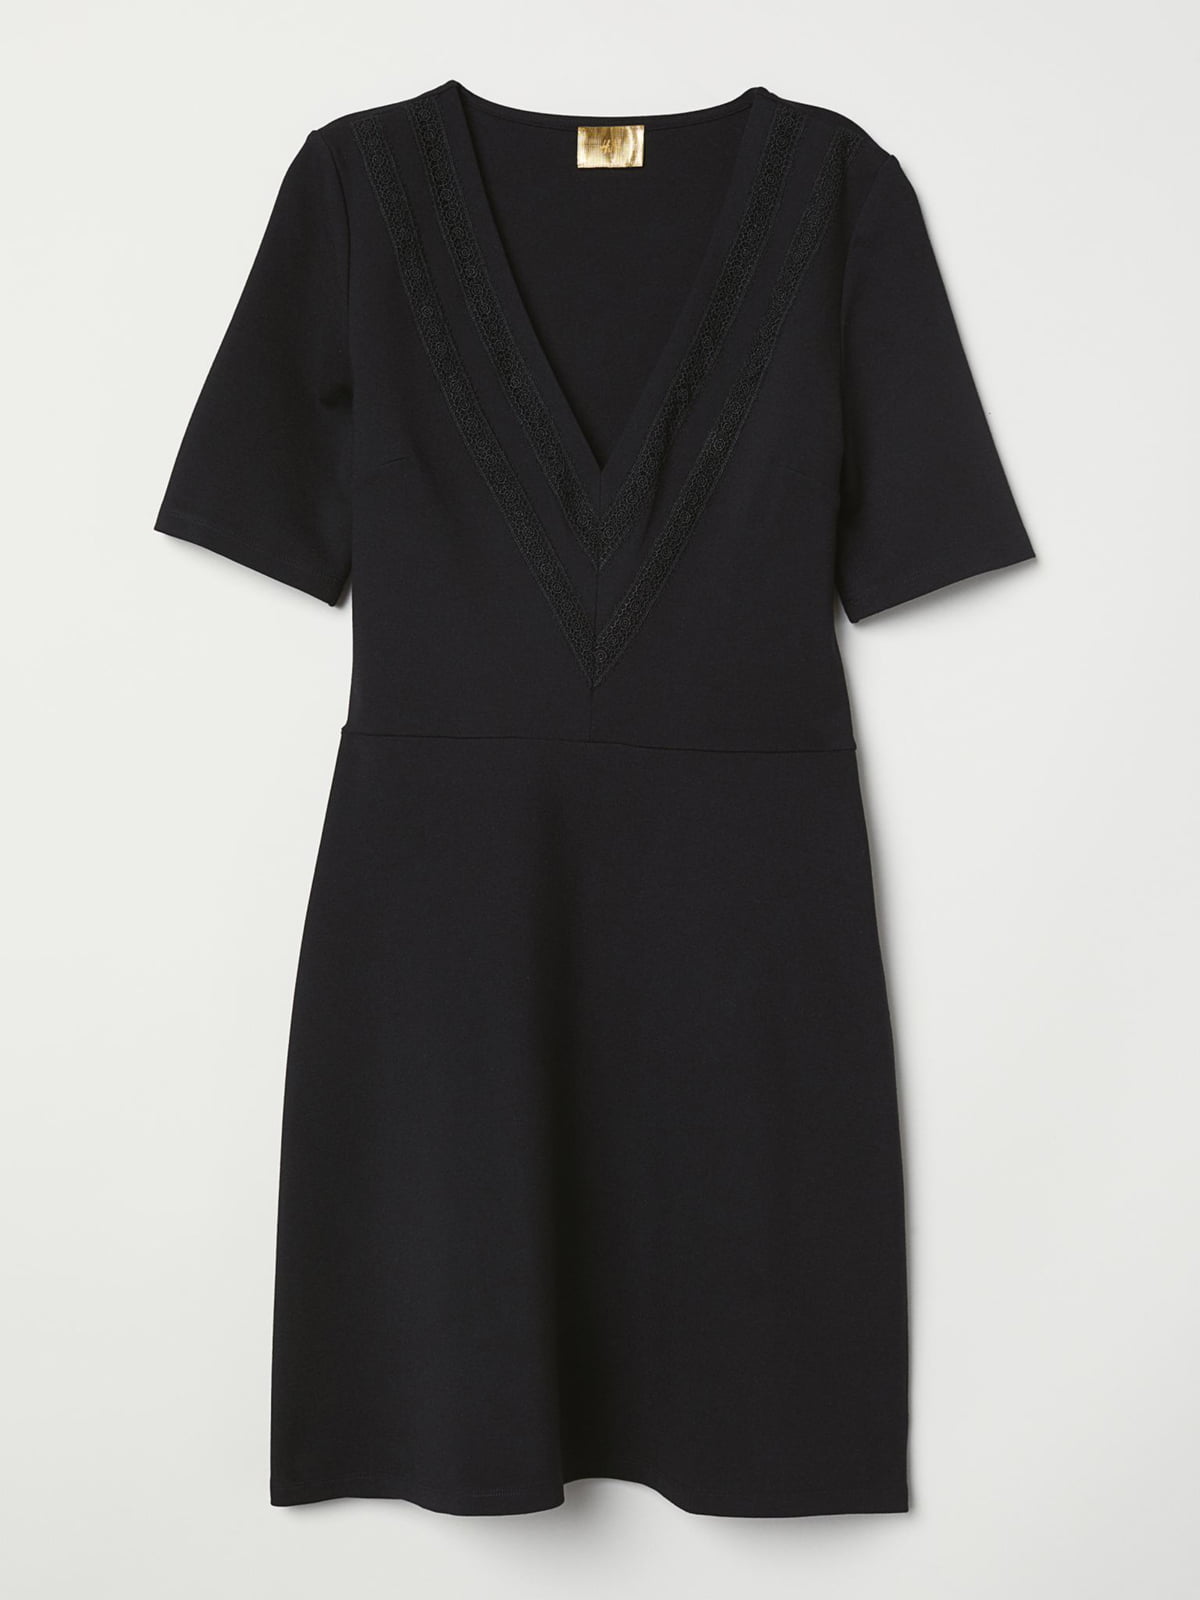 Платье черное | 5855759